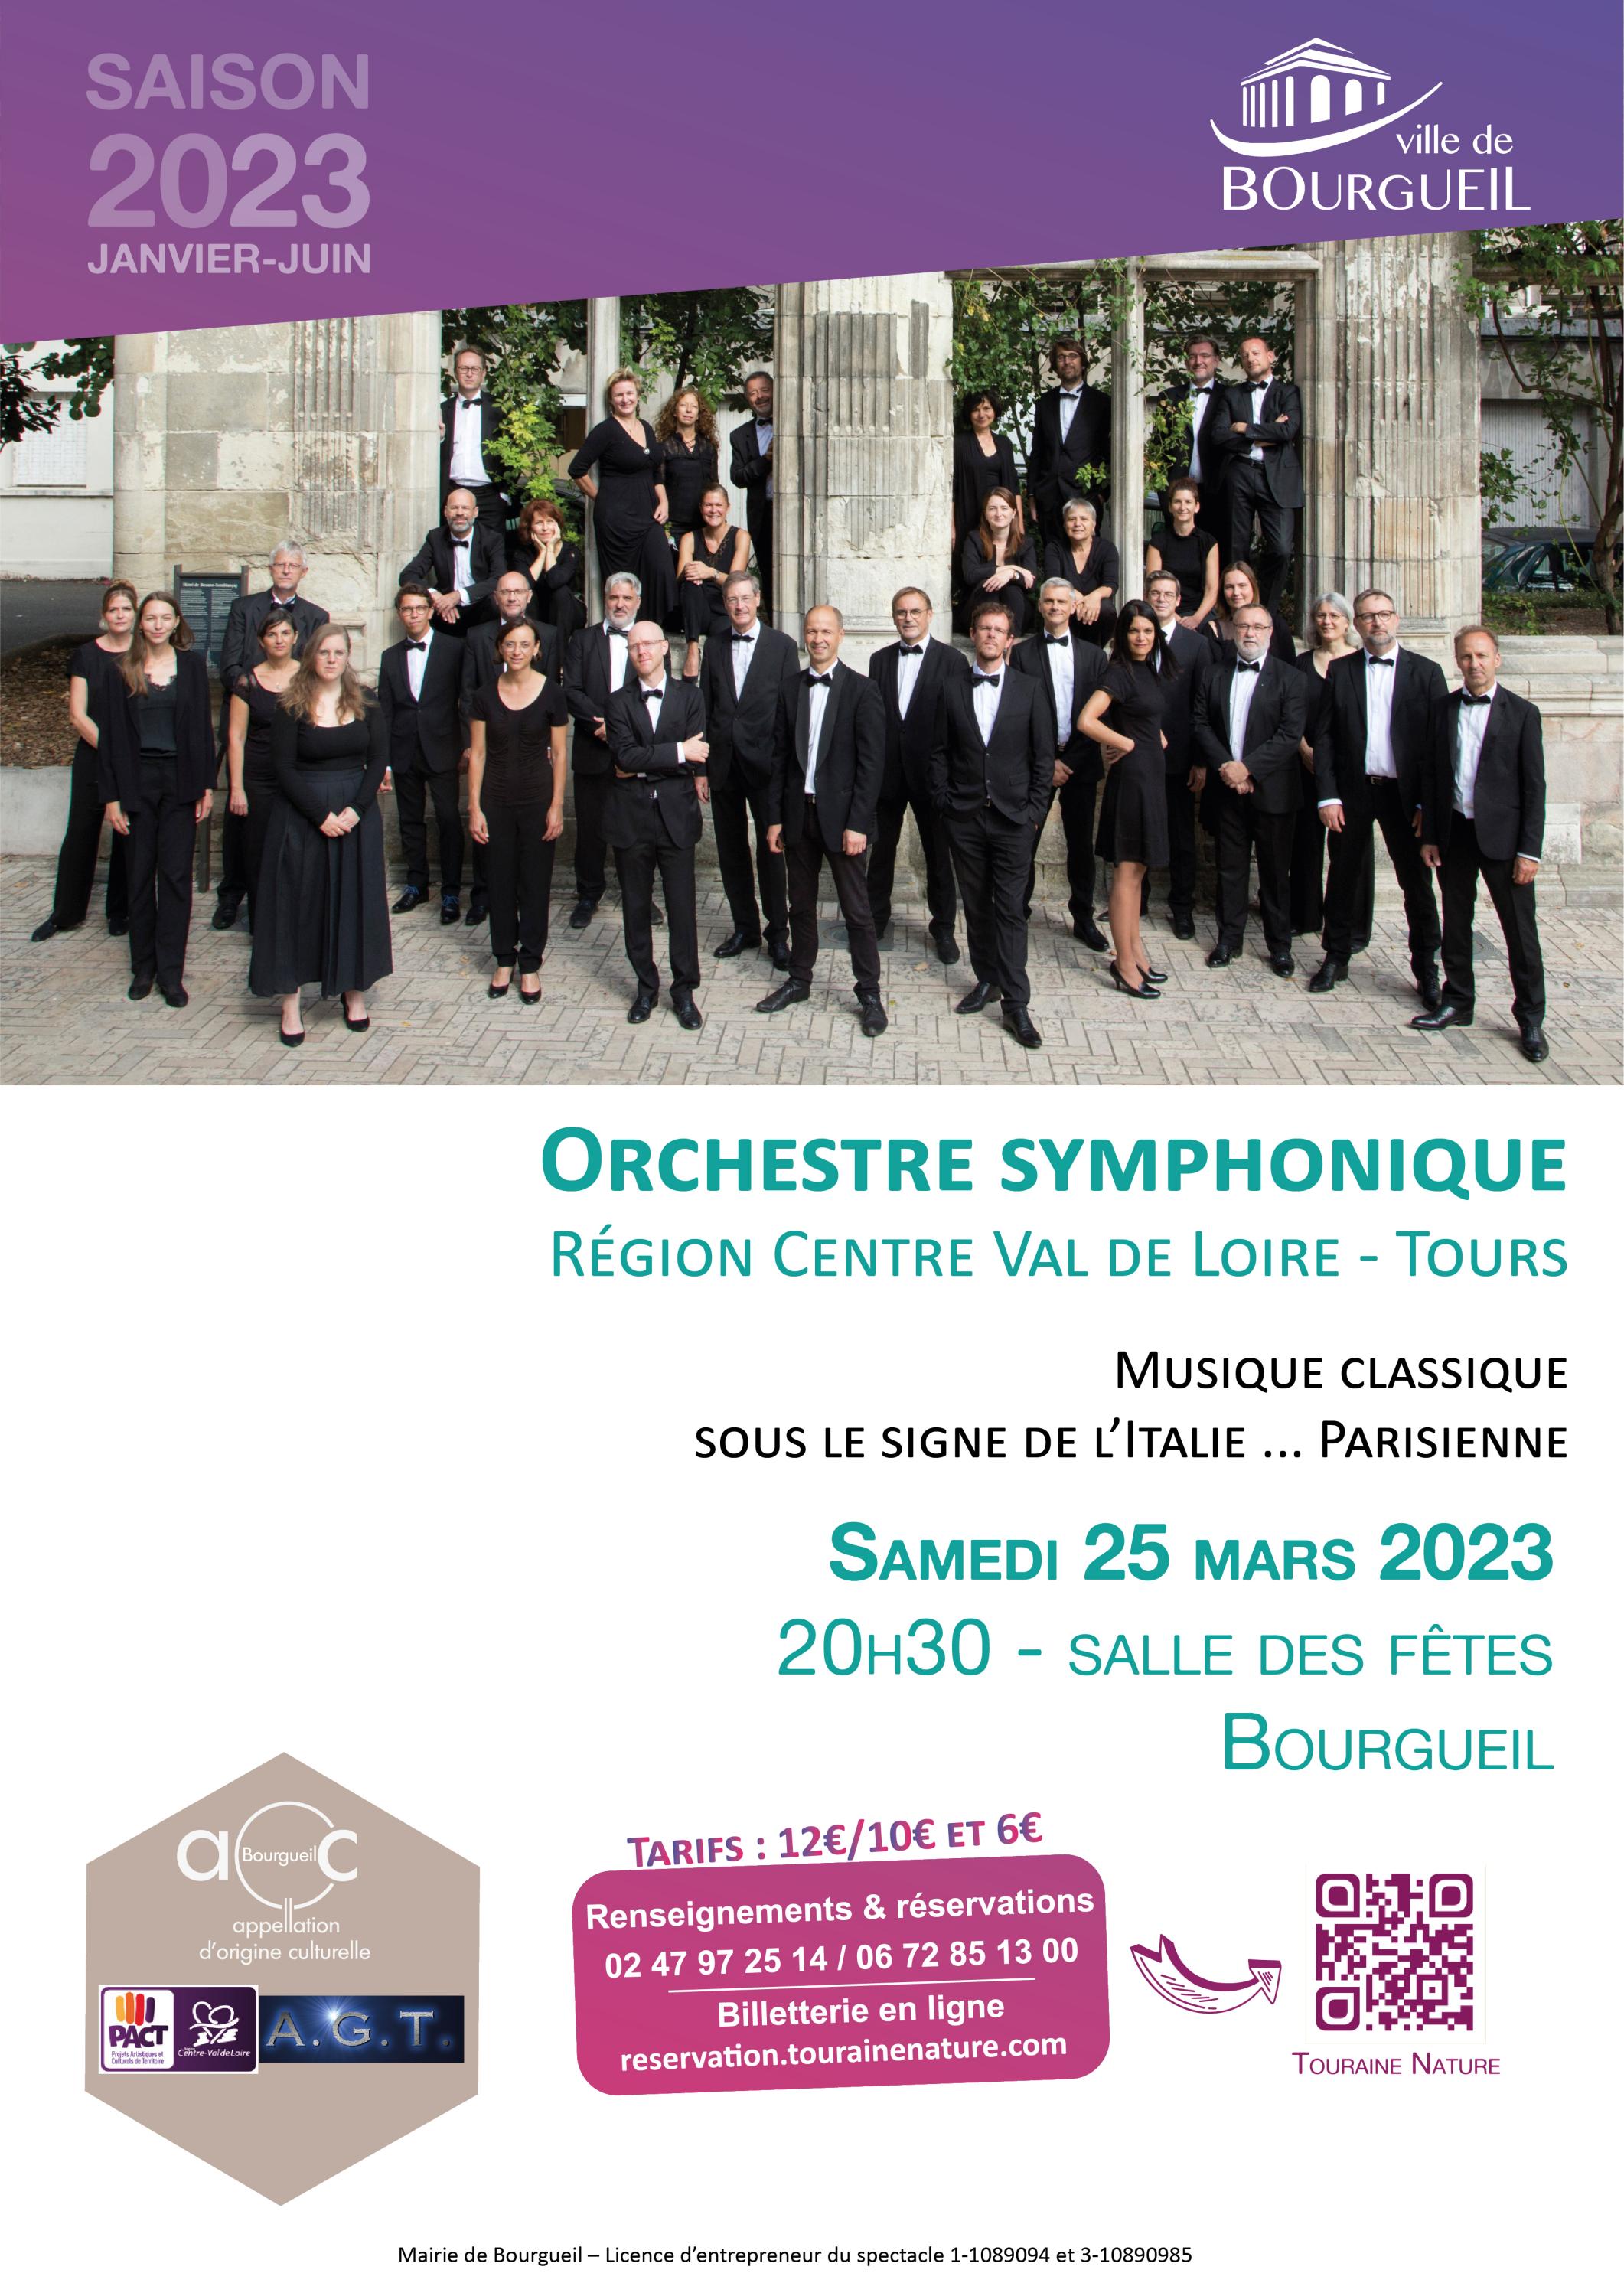 Concert de l’Orchestre Symphonique de la Région Centre-Val-de-Loire / Tours